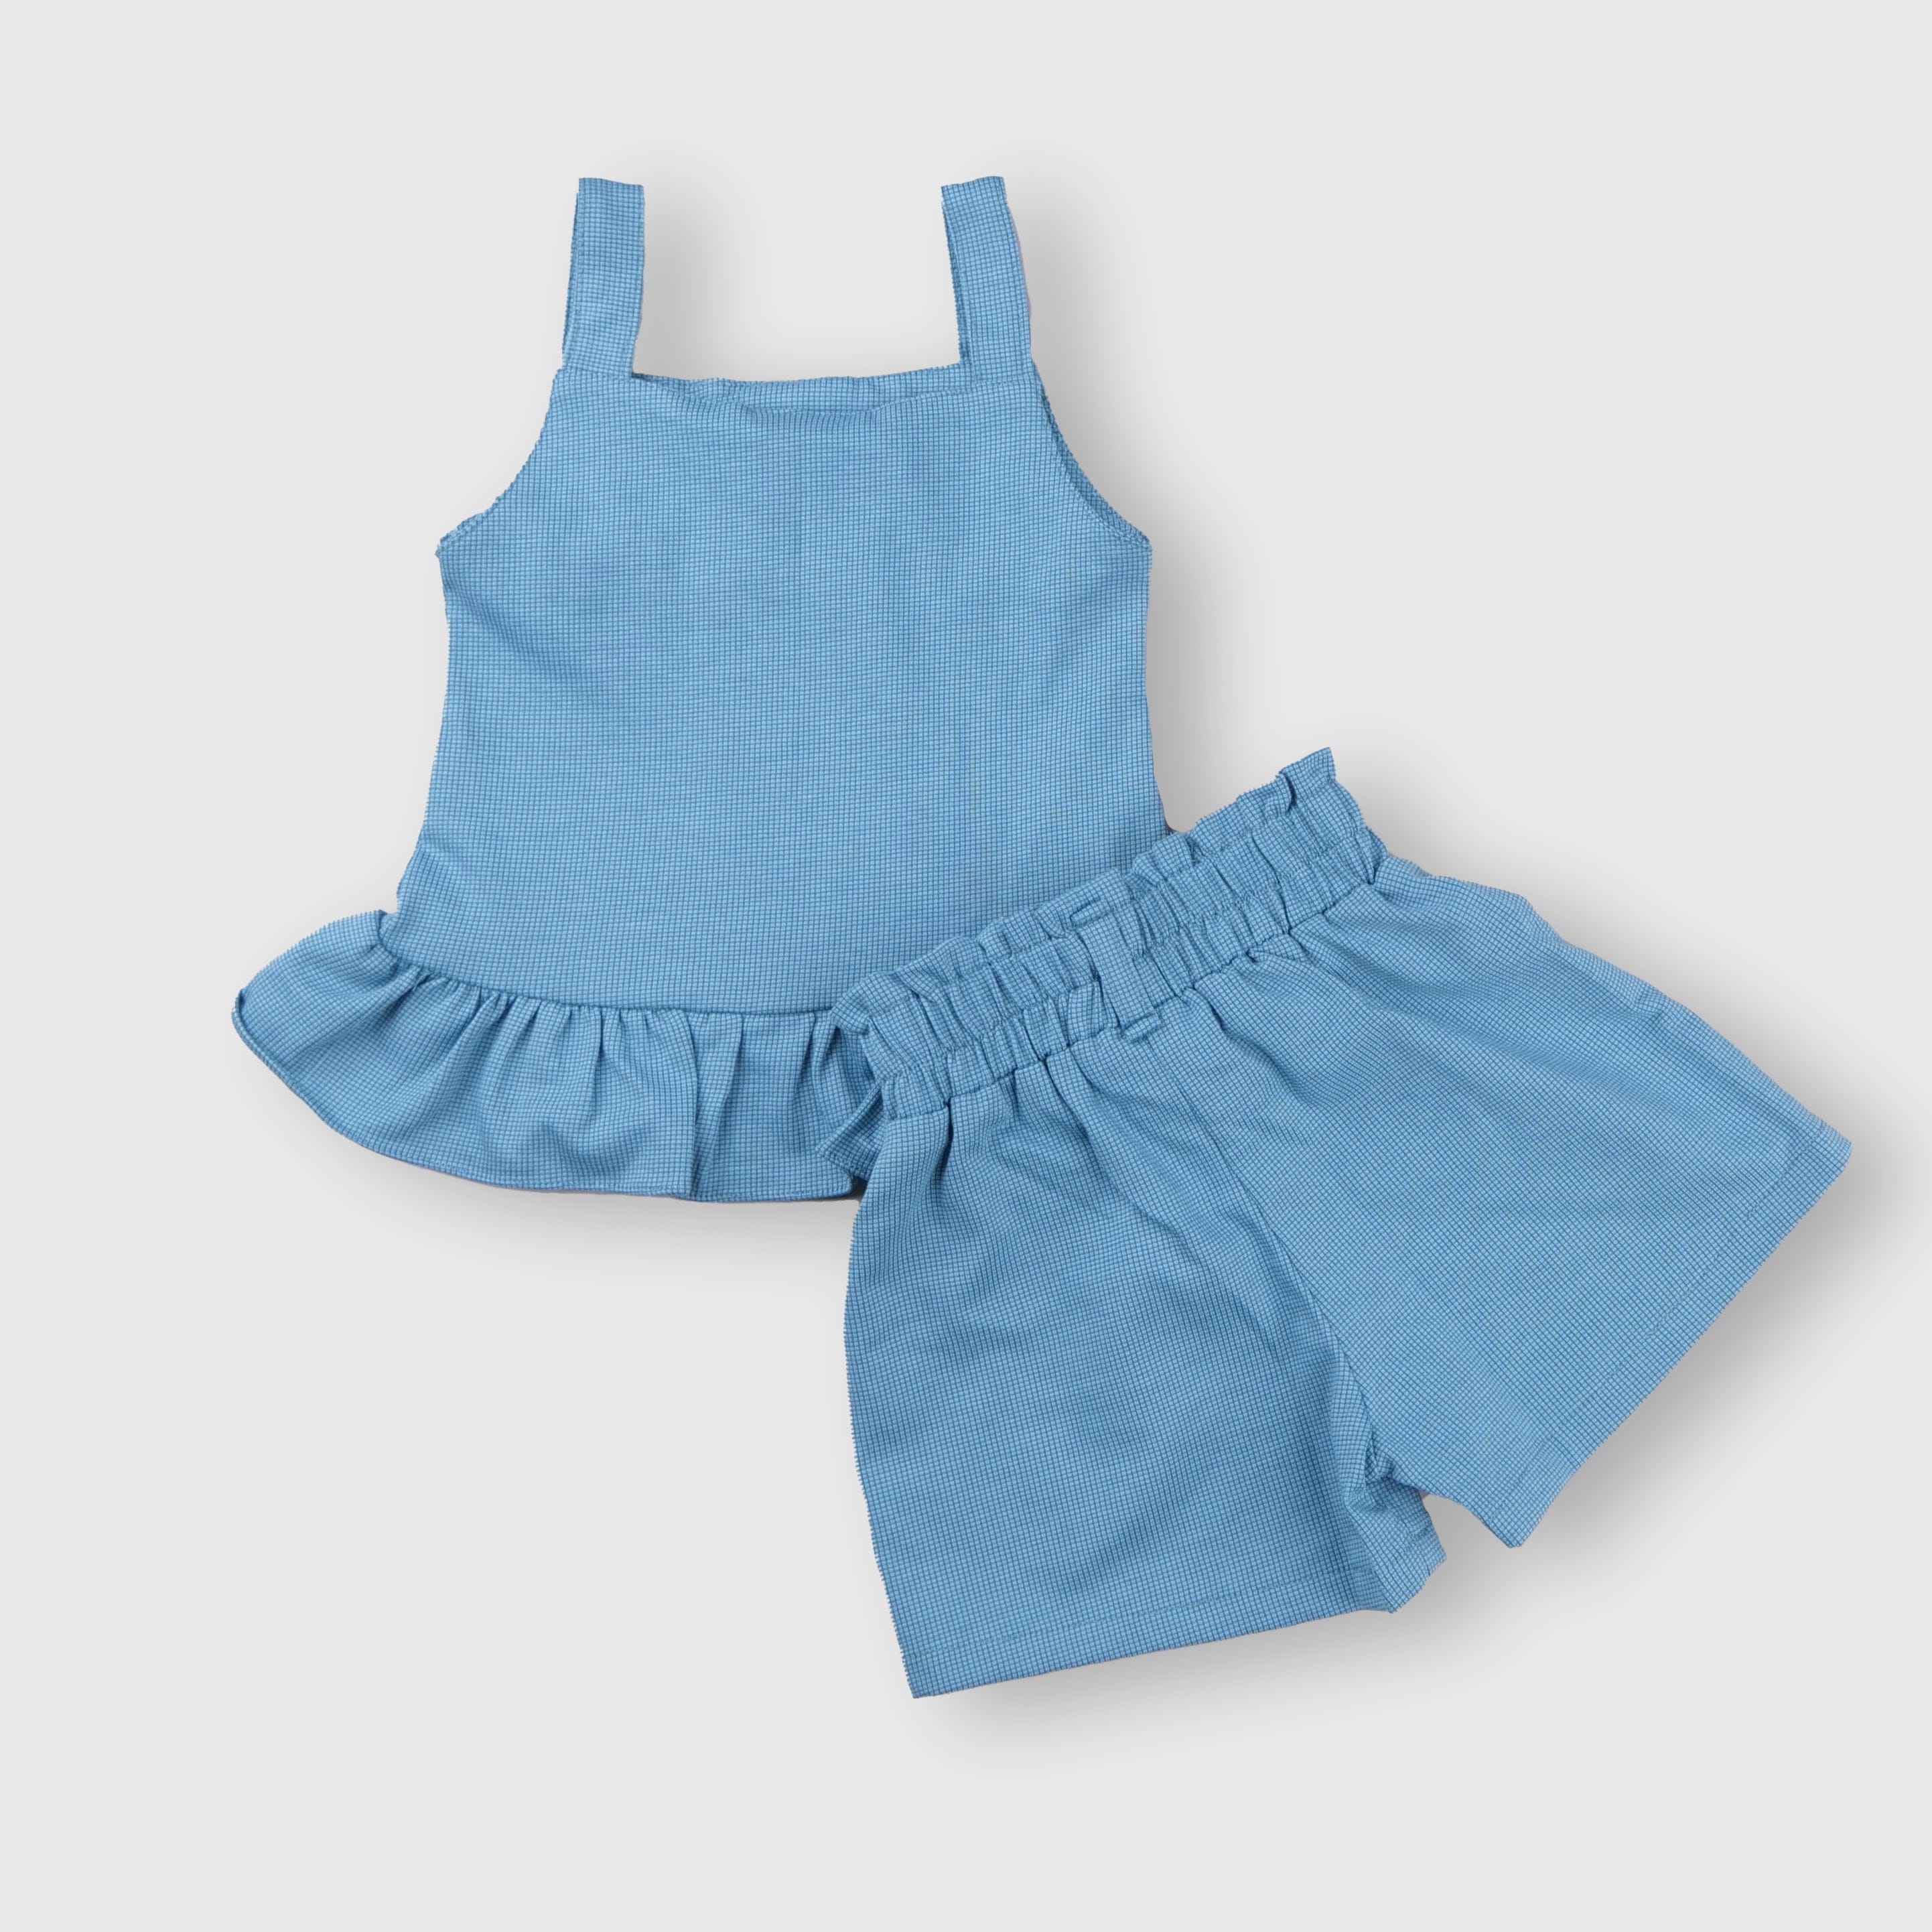 Clothing Sets For Girls | 3-18 Months | KG151 Blue